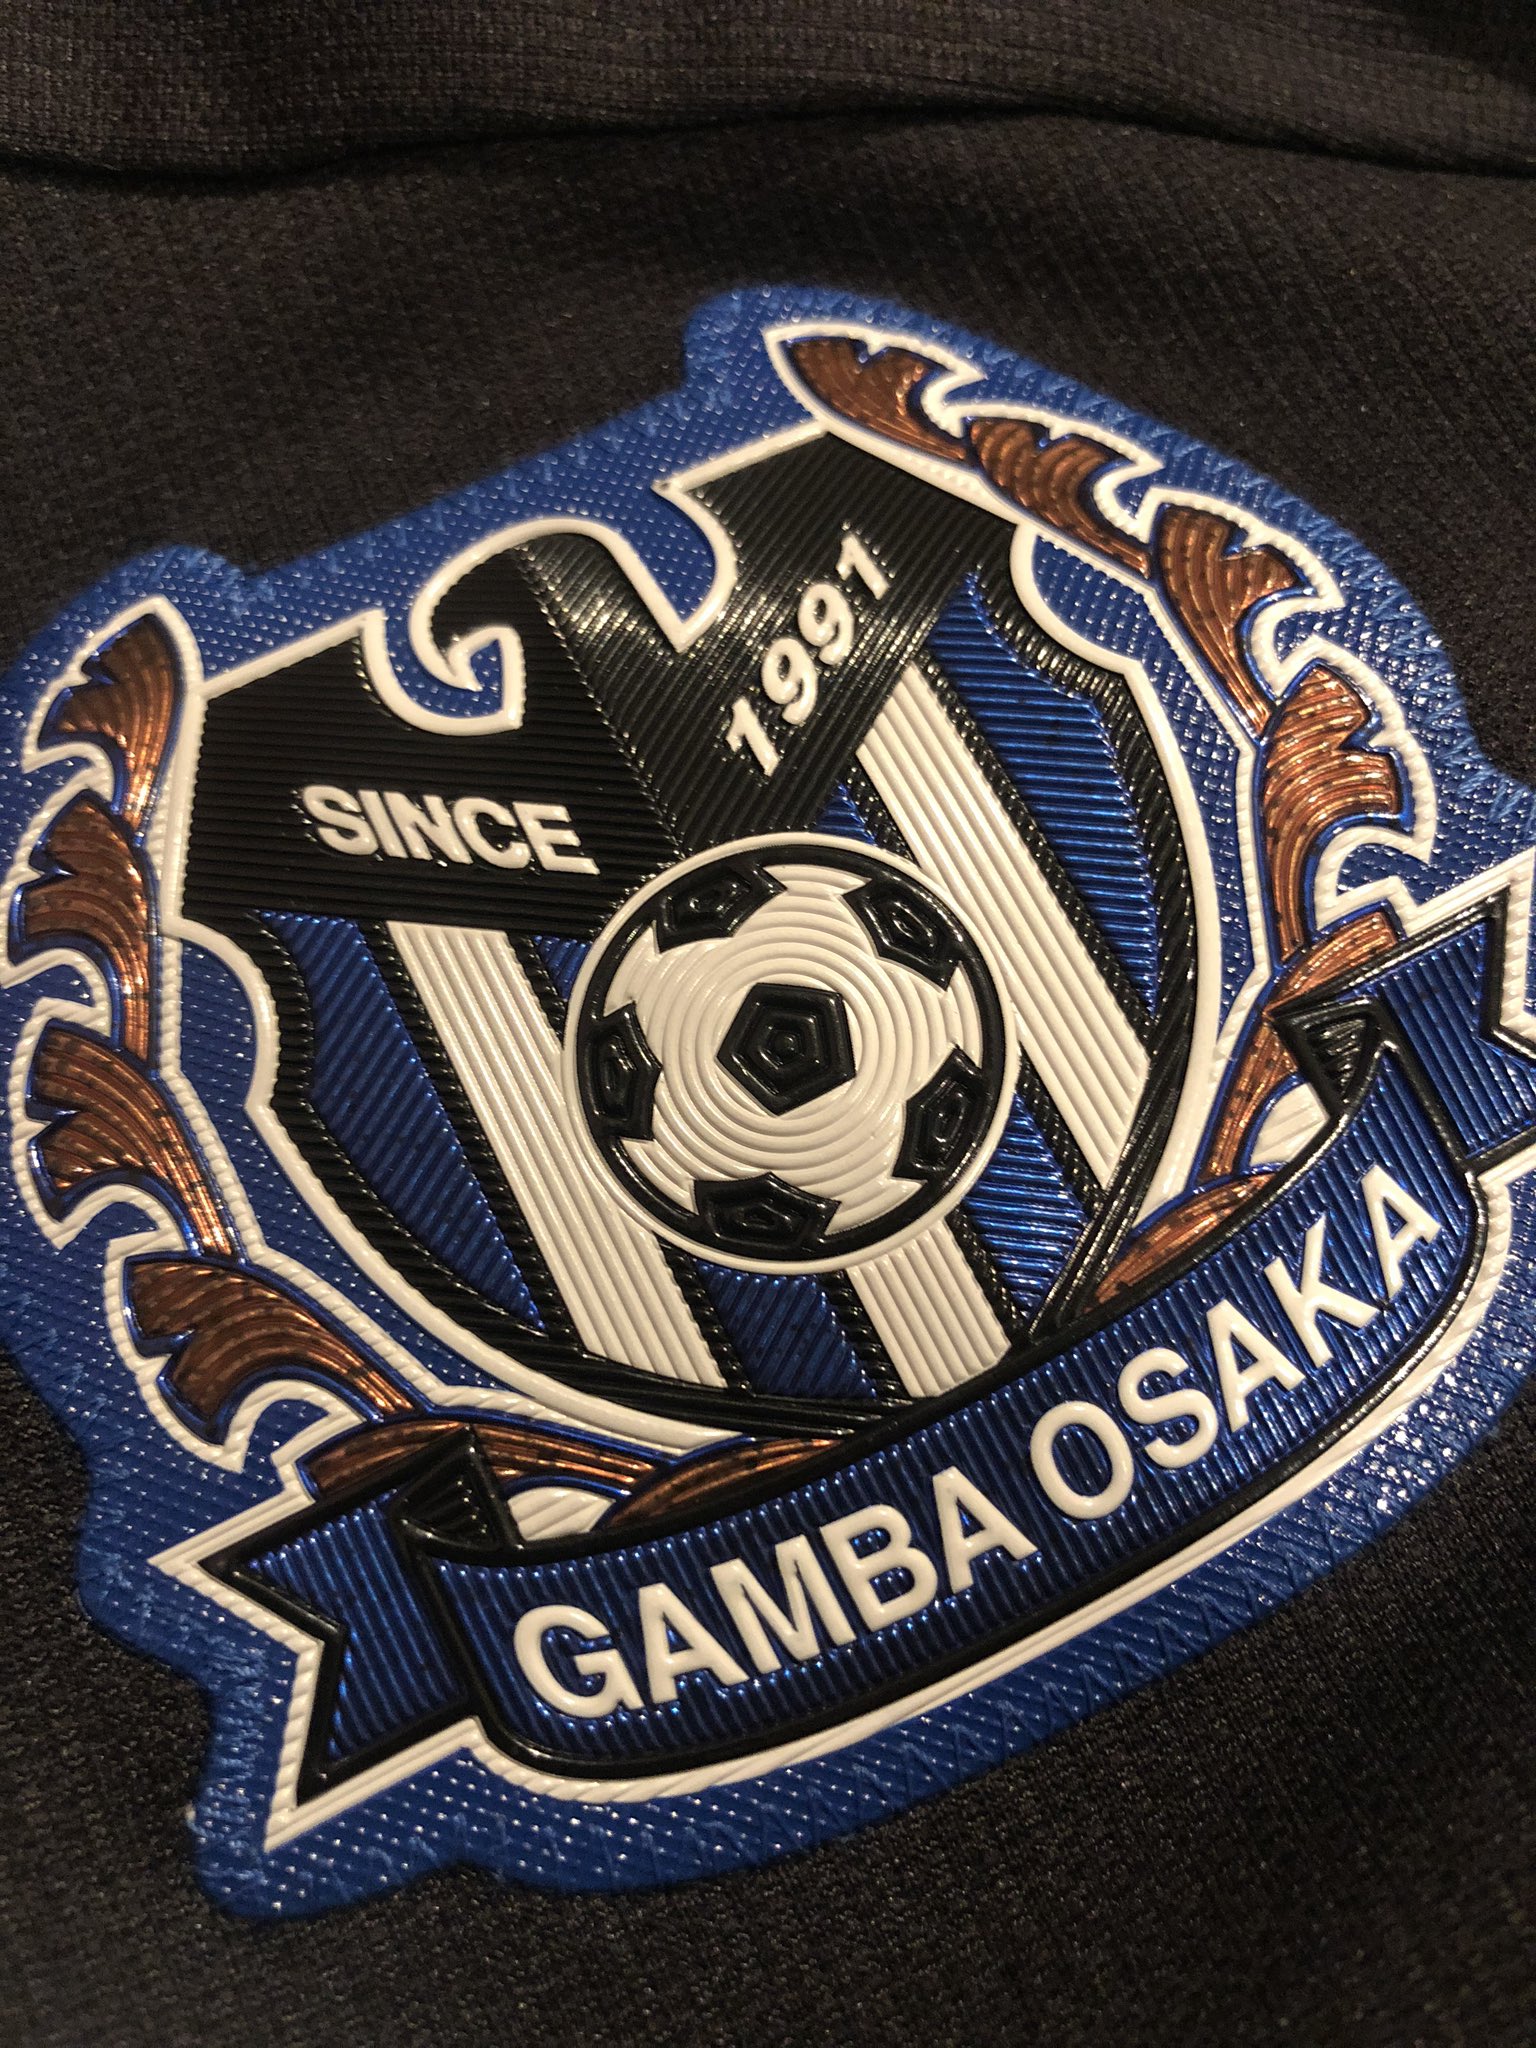 なつくん ガンバ大阪のエンブレムを身にまとって戦っているのは 決してトップの選手だけではありません ガンバ の未来を担う選手になるべく日々奮闘するu 23も またこのクラブの宝であるアカデミーも 同じガンバ大阪です どうかトップの試合だけでなく